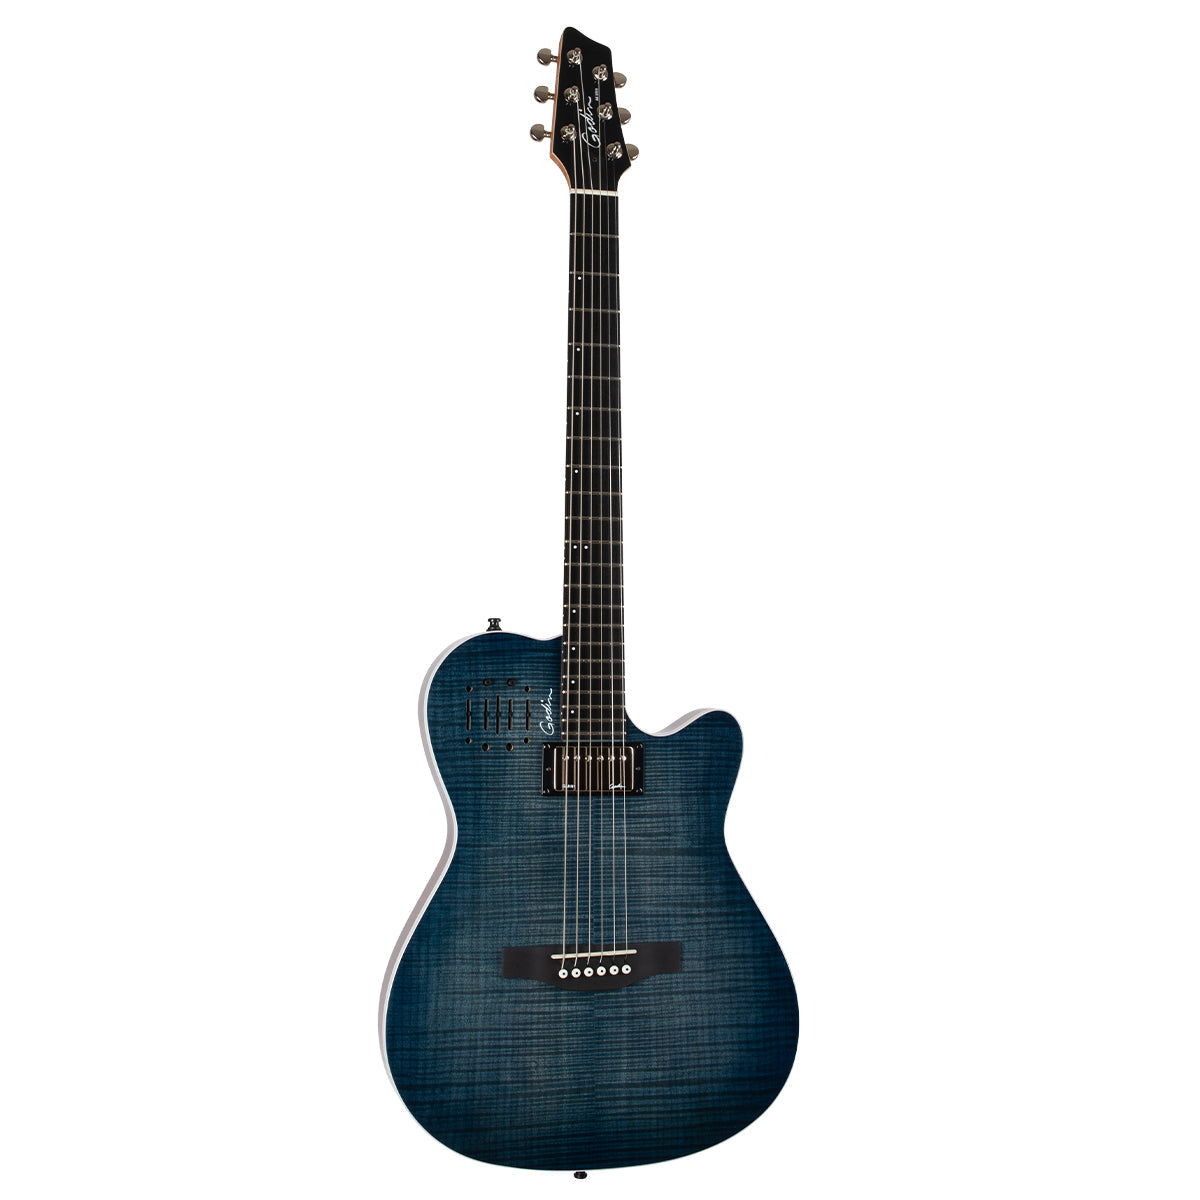 Godin A6 Ultra Electric Guitar ~ Denim Blue Flame, Electric Guitar for sale at Richards Guitars.